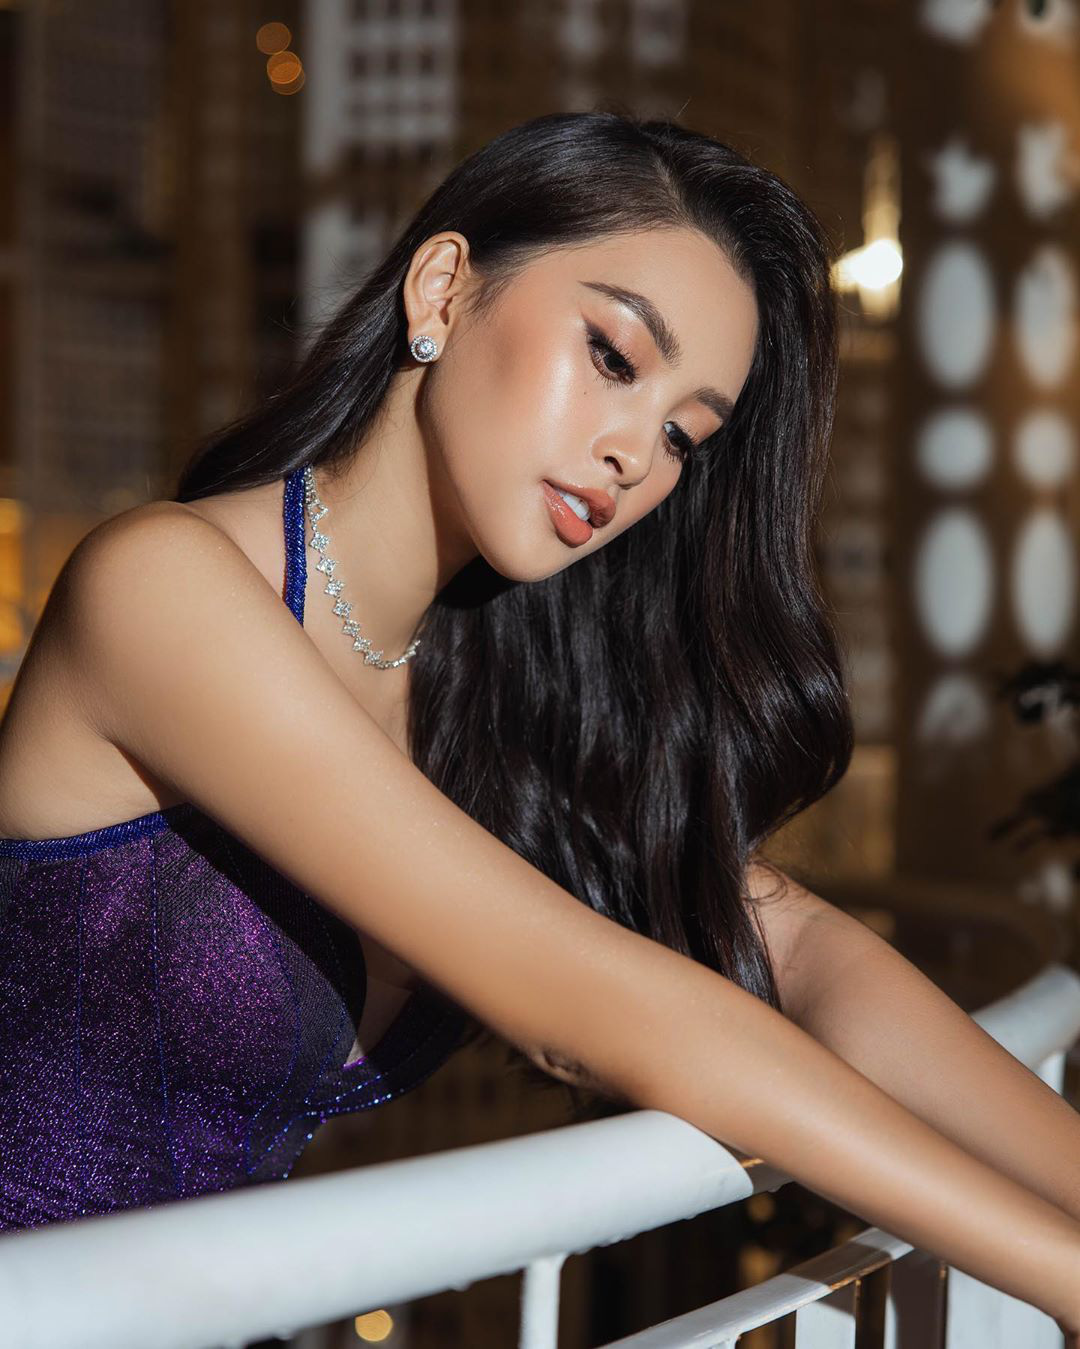 Trần Tiểu Vy nói gì khi bị chê chưa đủ khả năng làm giám khảo Miss World Vietnam 2021? - Ảnh 2.